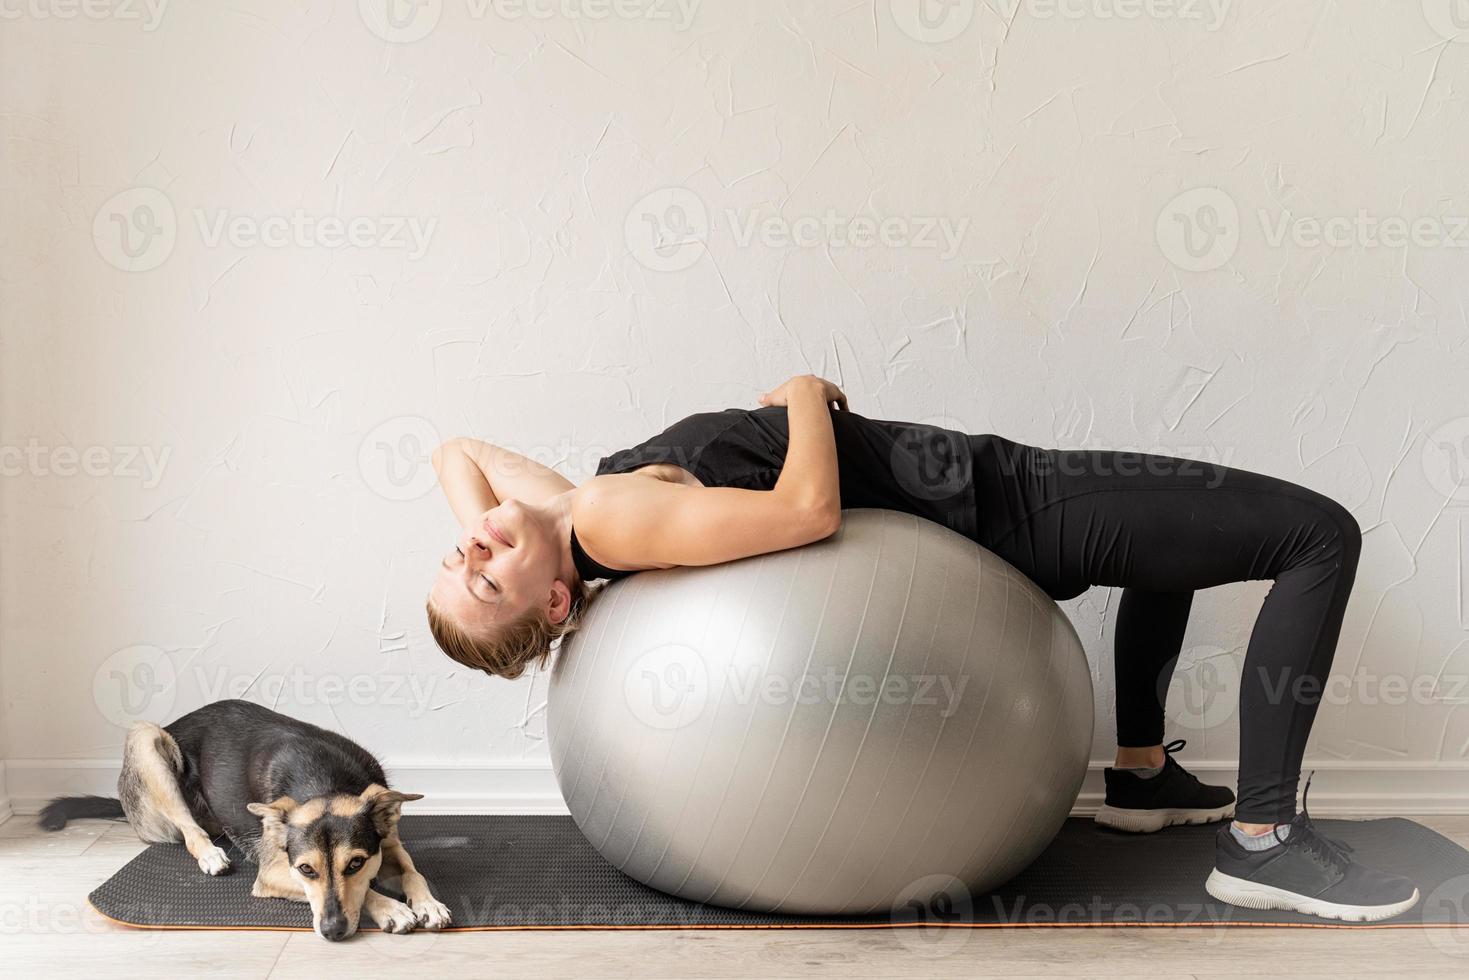 donna sdraiata sulla palla fitness in fase di riscaldamento prima dell'allenamento foto